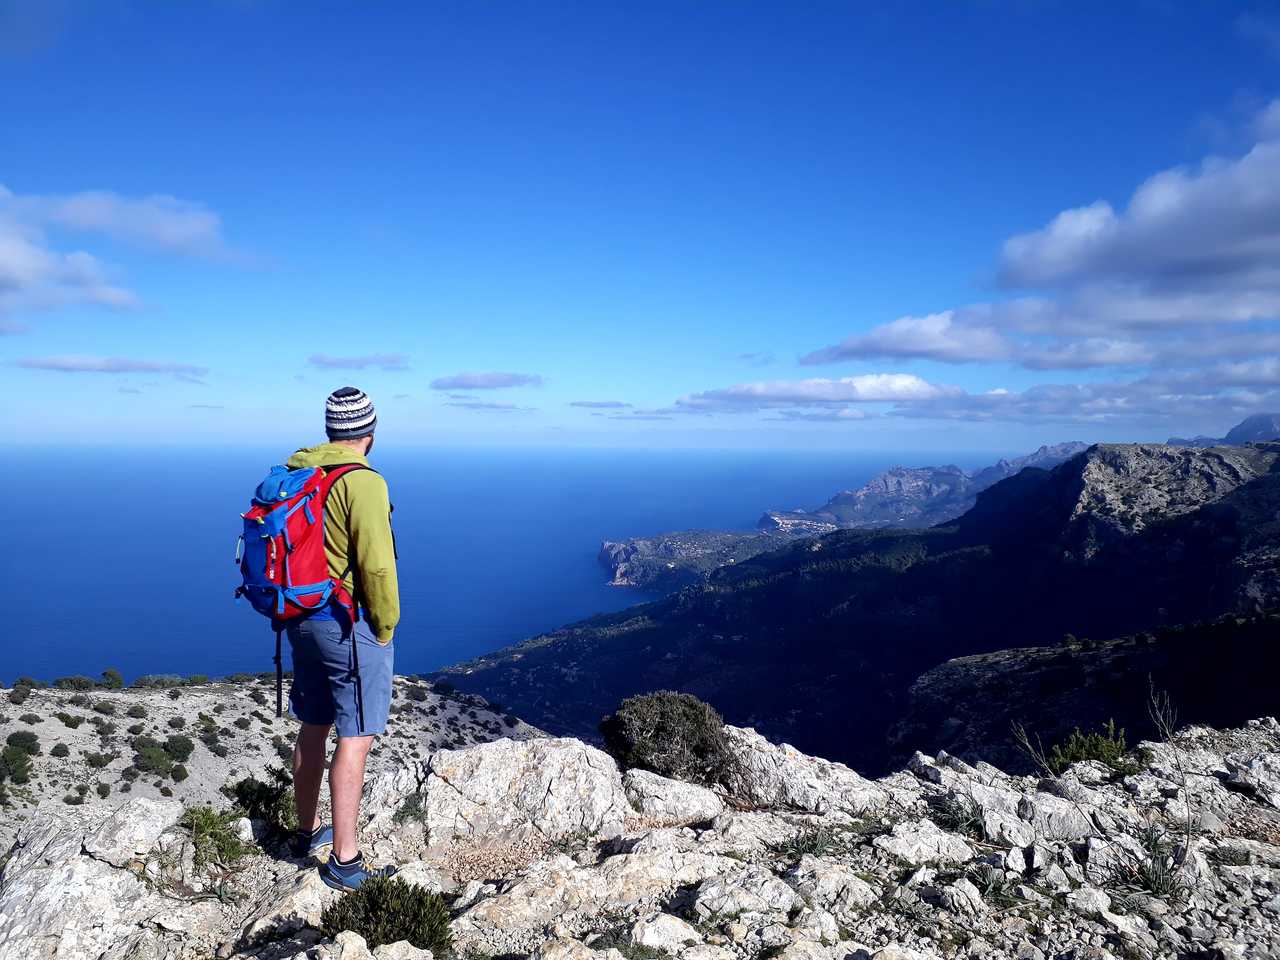 Randonneur qui admire le panorama sur la Cap de Formentor entre mer et montagne